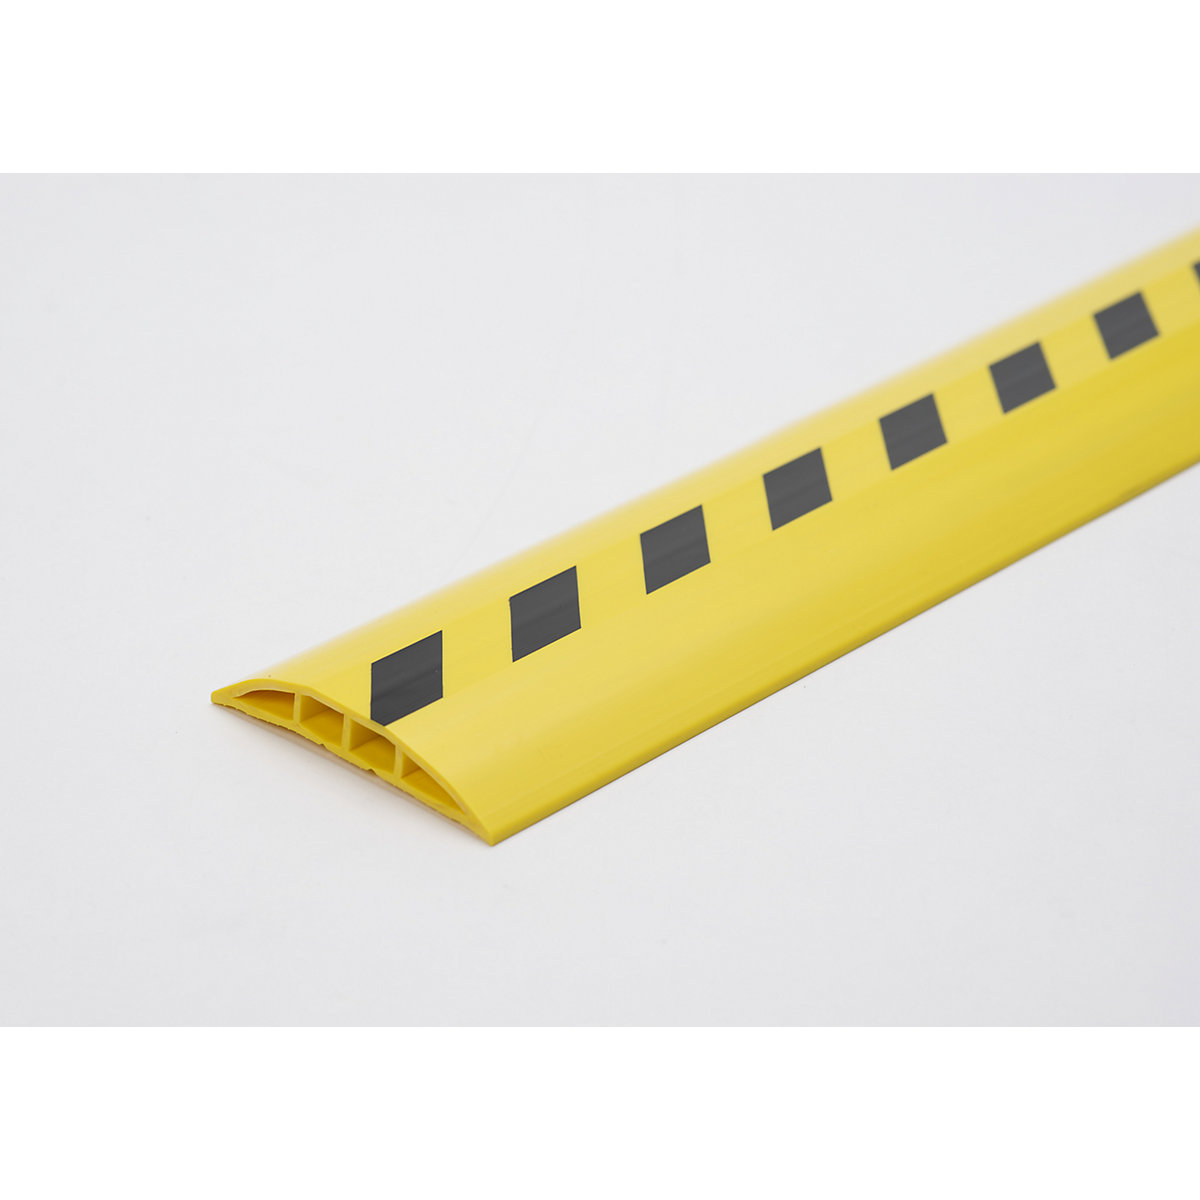 Plastični kabelski most, za kabele i crijeva Ø do 7,5 mm, u crno-žutoj boji, 2 komore, dužina 1,5 m-3